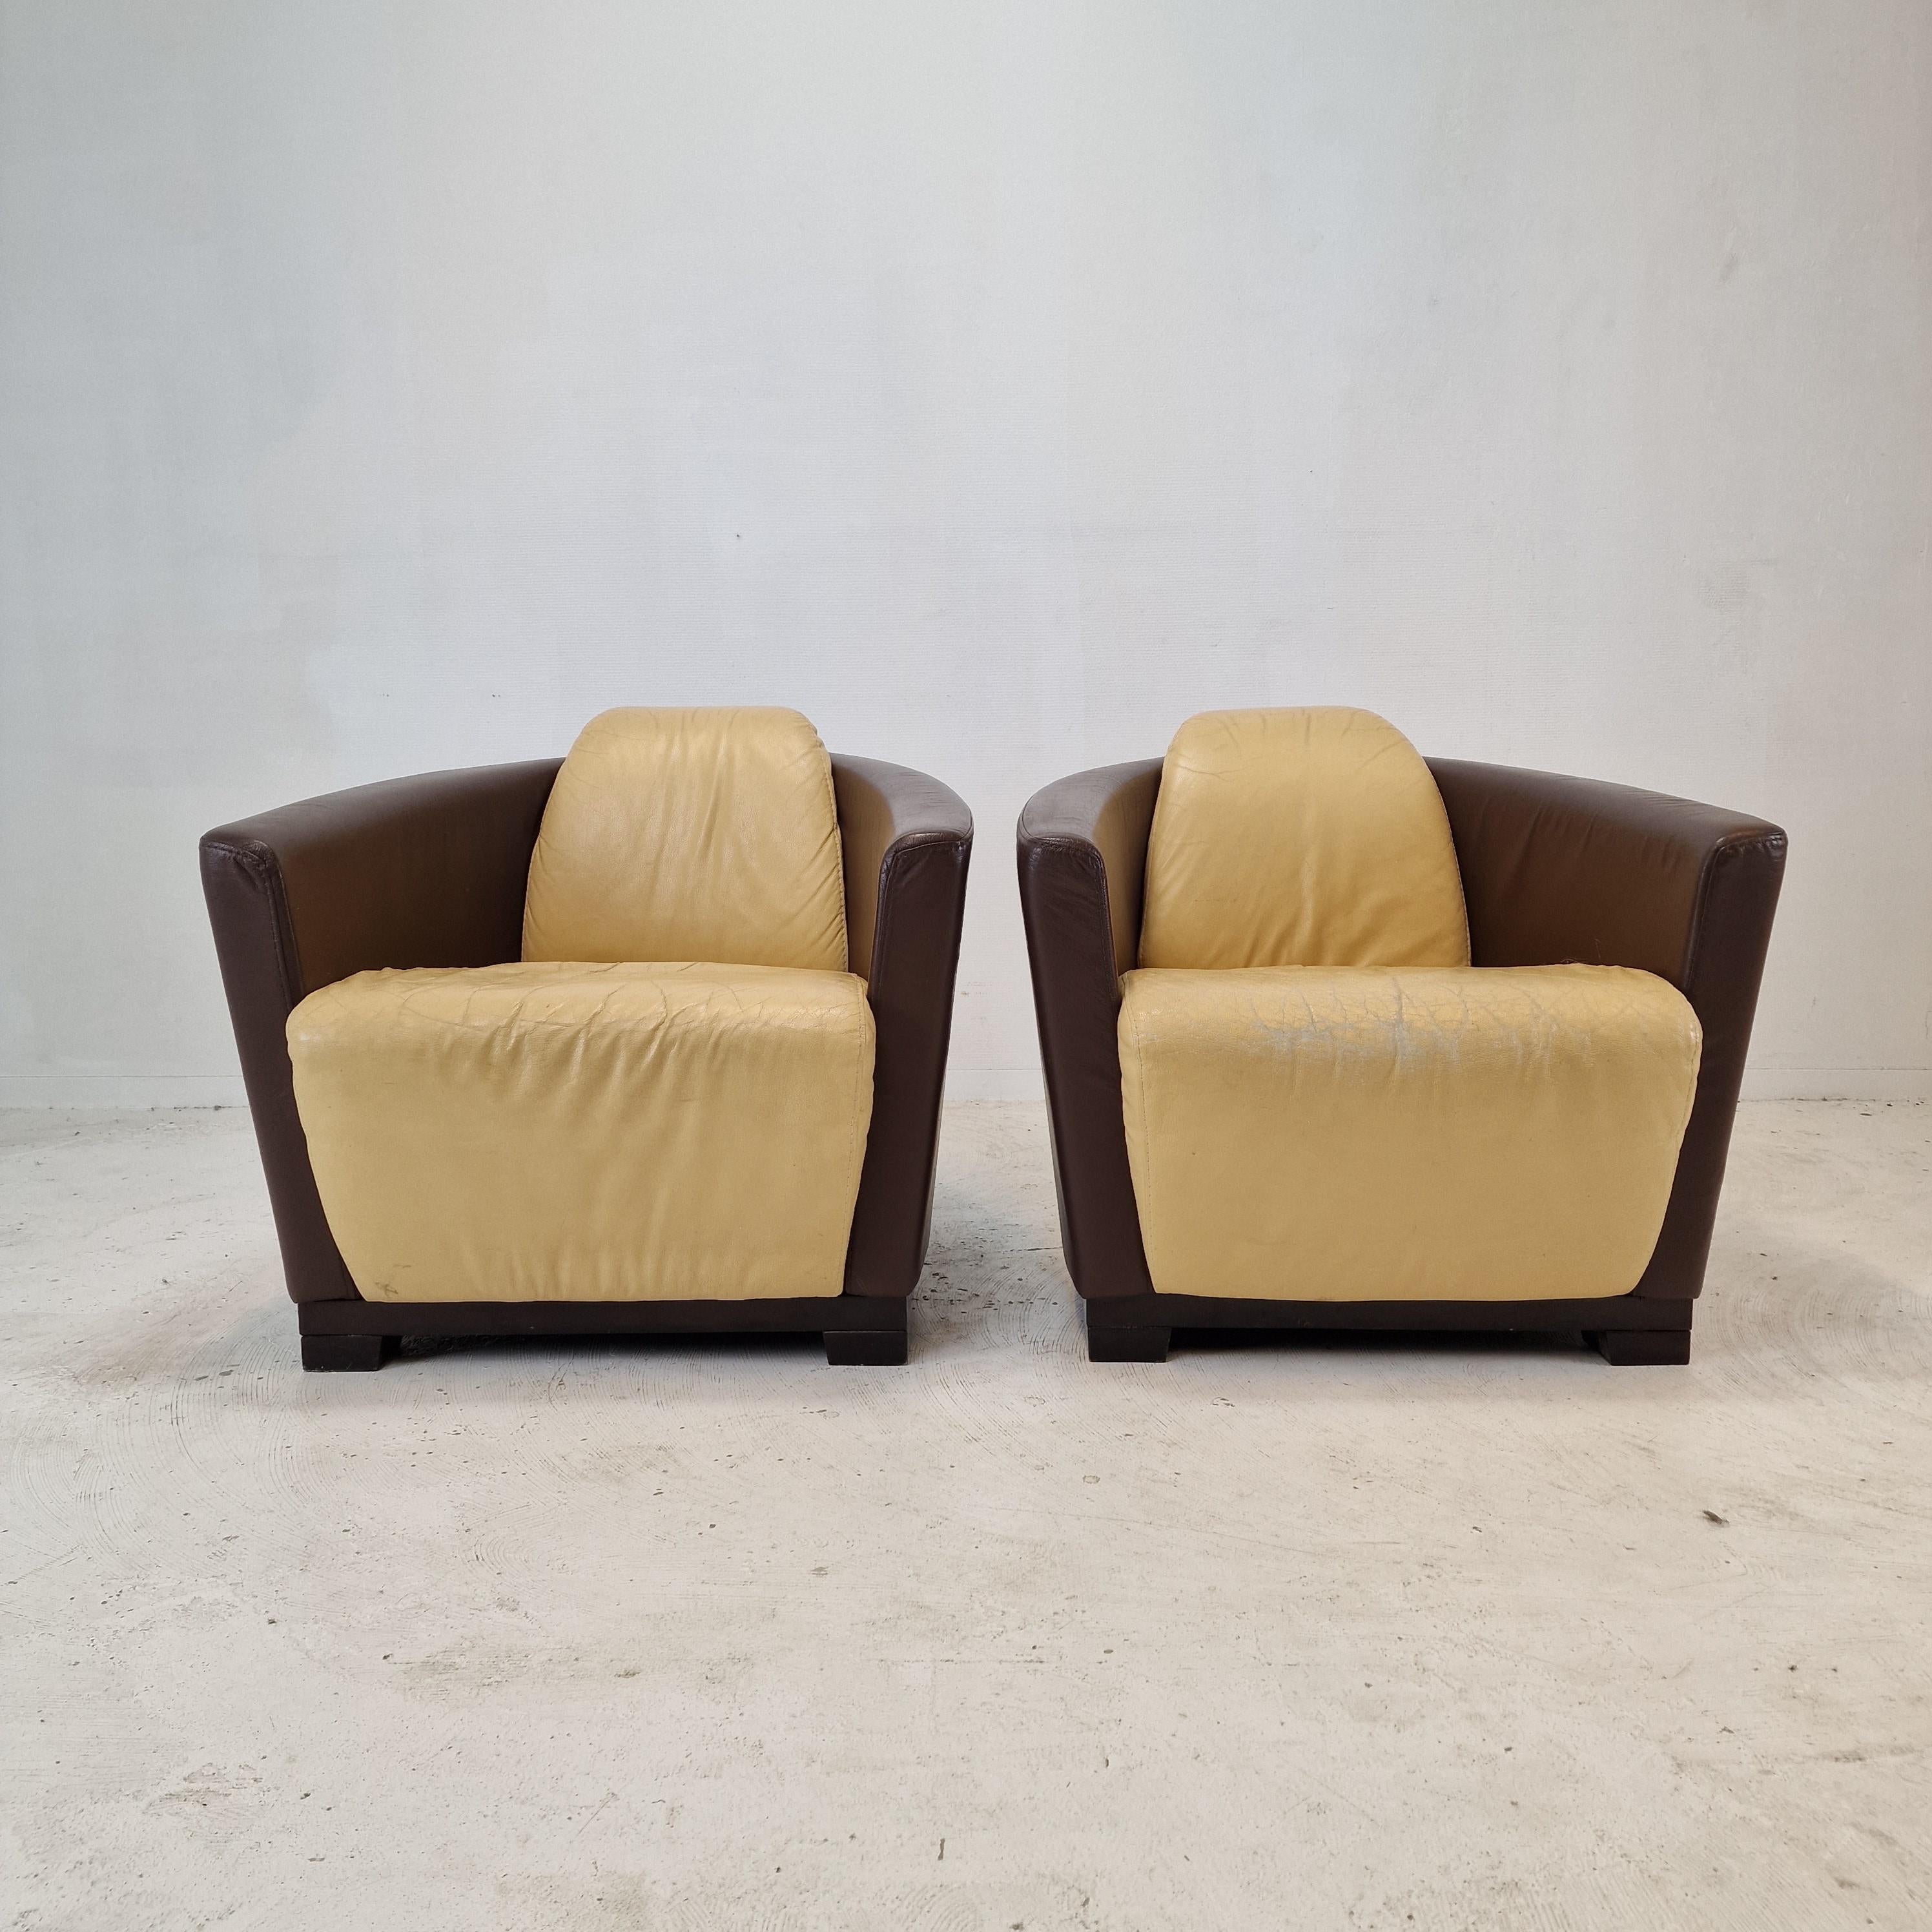 Sehr schönes Set von 2 Club- oder Lounge-Stühlen, hergestellt von Calia in Italien in den 80er Jahren. 

Erstellt mit einem soliden Holzrahmen und sehr schöne beige und braun Leder.
Das hochwertige Leder ist in gebrauchtem Zustand und hat eine